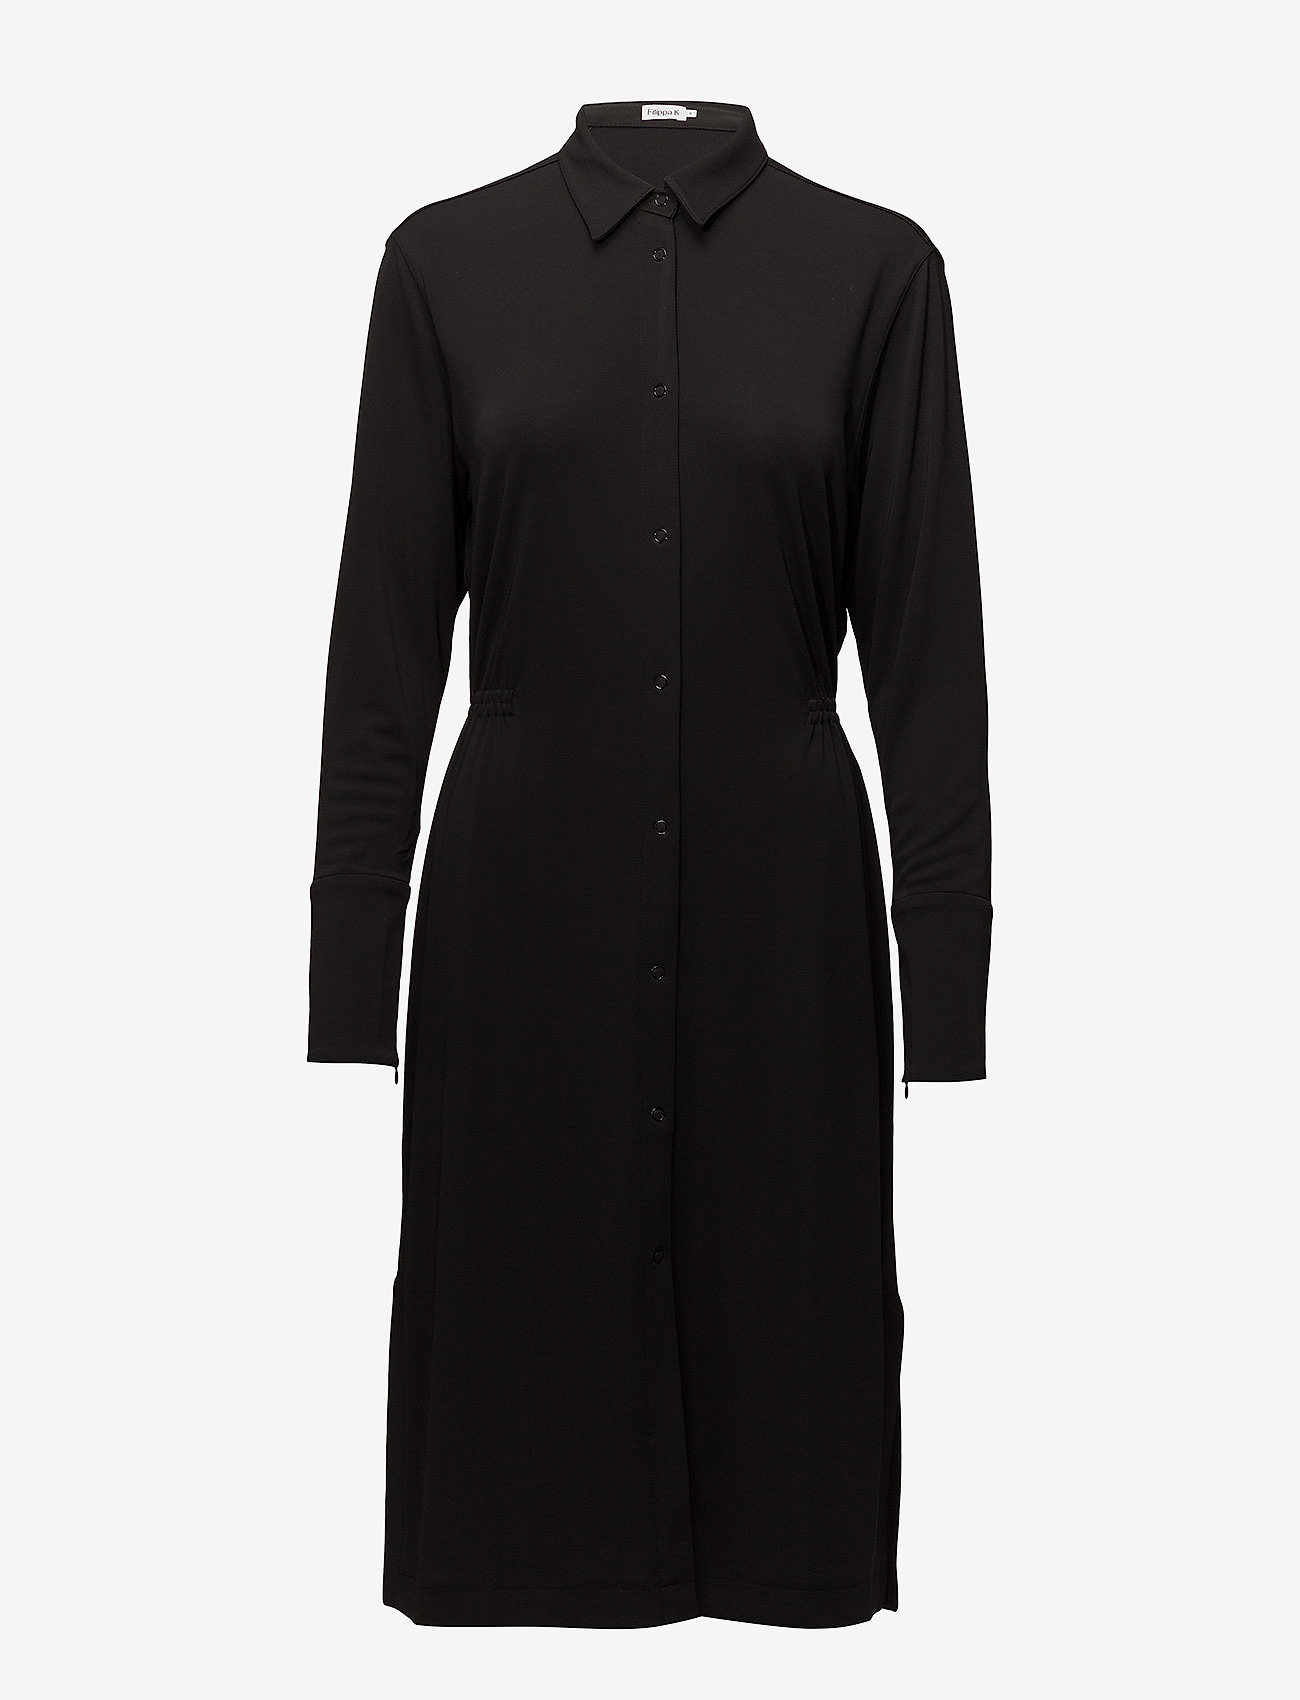 Jersey Shirt Dress (Black) (152.75 